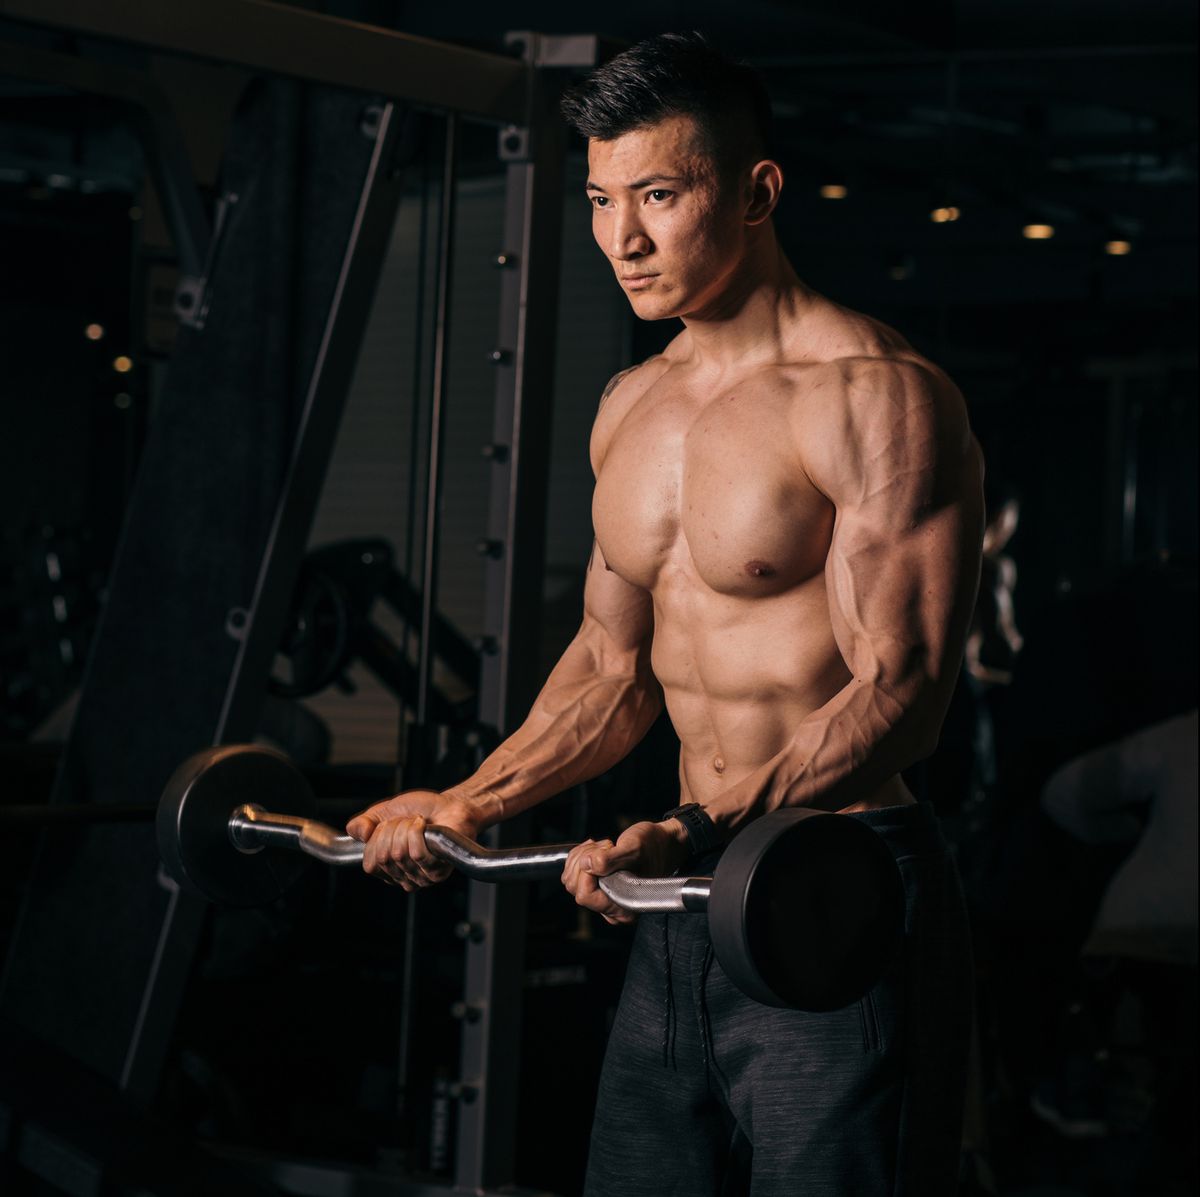 shirtless asian bodybuilder exercising